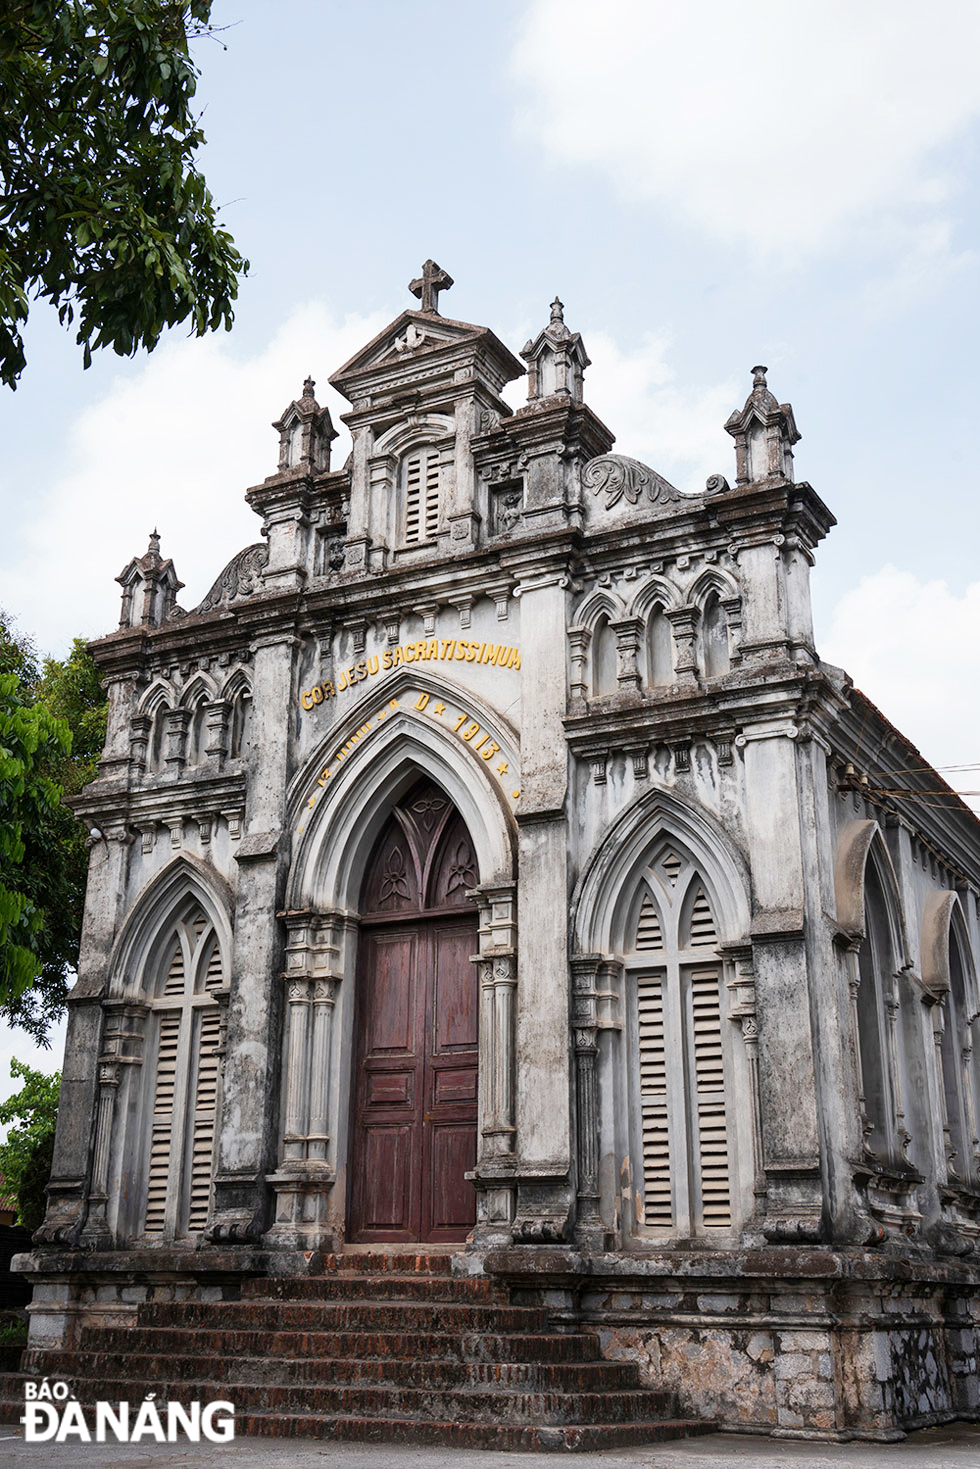 Sở Kiện là công trình duy nhất được quy hoạch và xây dựng theo kiểu quần thể nhà thờ chính tòa (doumo) của Italy ở Việt Nam, gồm: nhà thờ chính, tòa giám mục và chủng viện.	